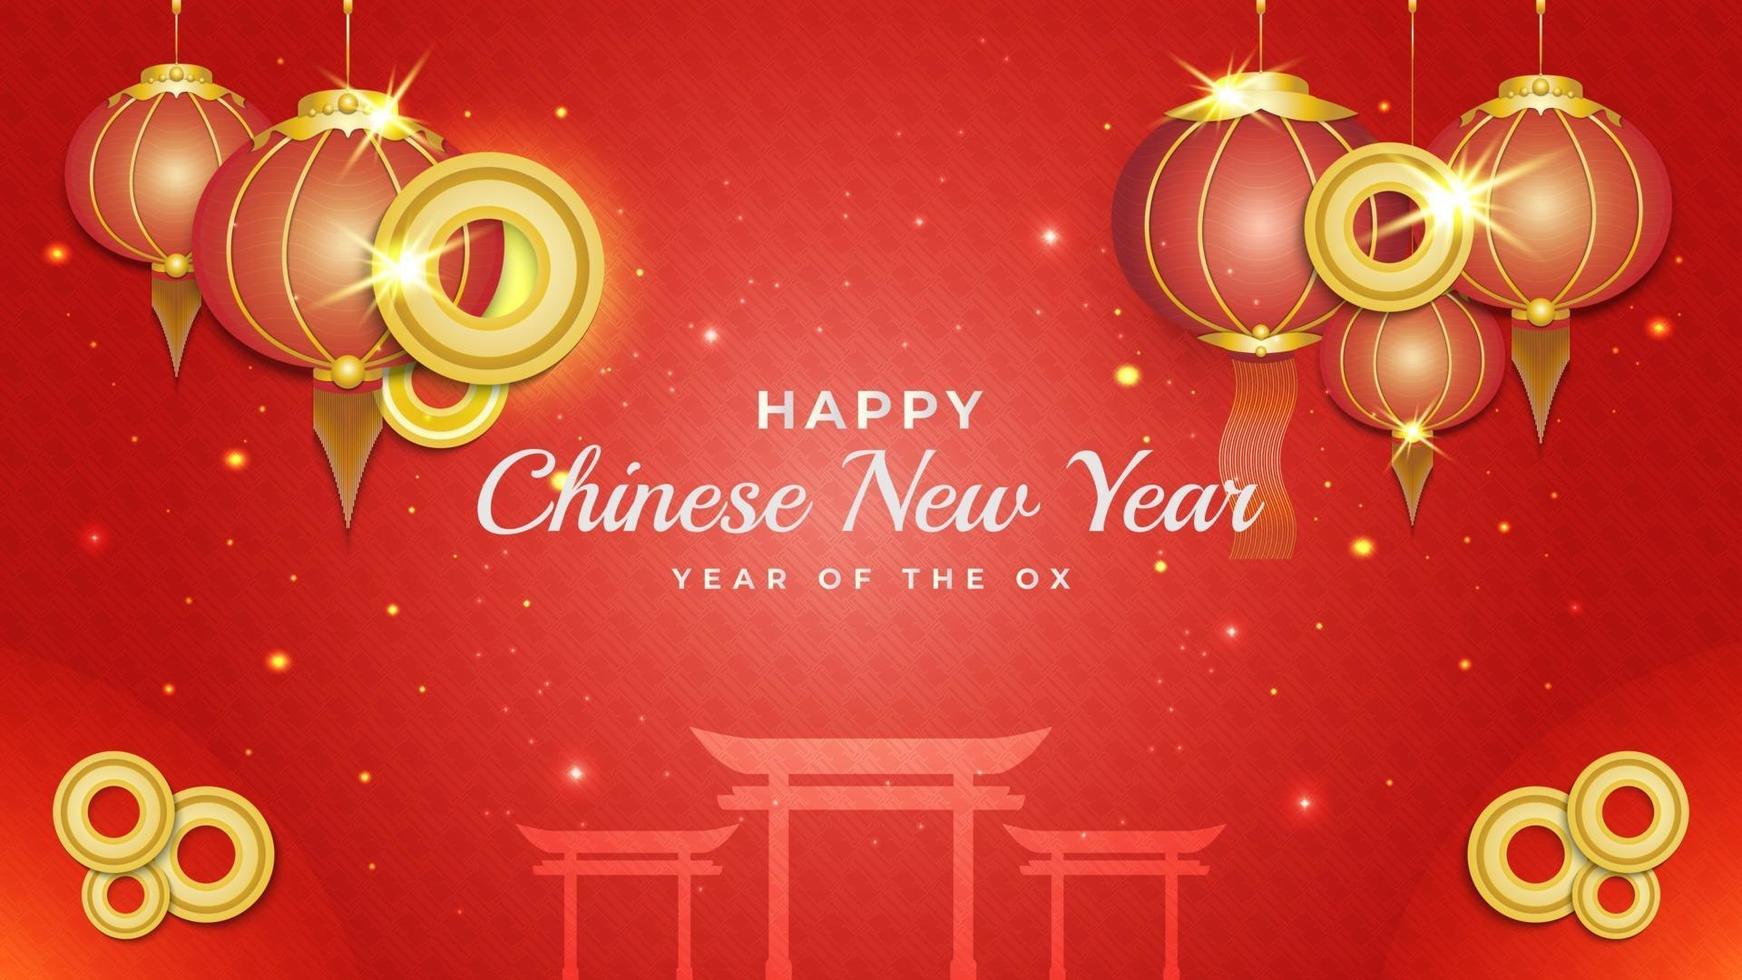 banner ou pôster de feliz ano novo chinês de 2021 com lanternas vermelhas e douradas e a silhueta do portão chinês em fundo vermelho ornamental vetor